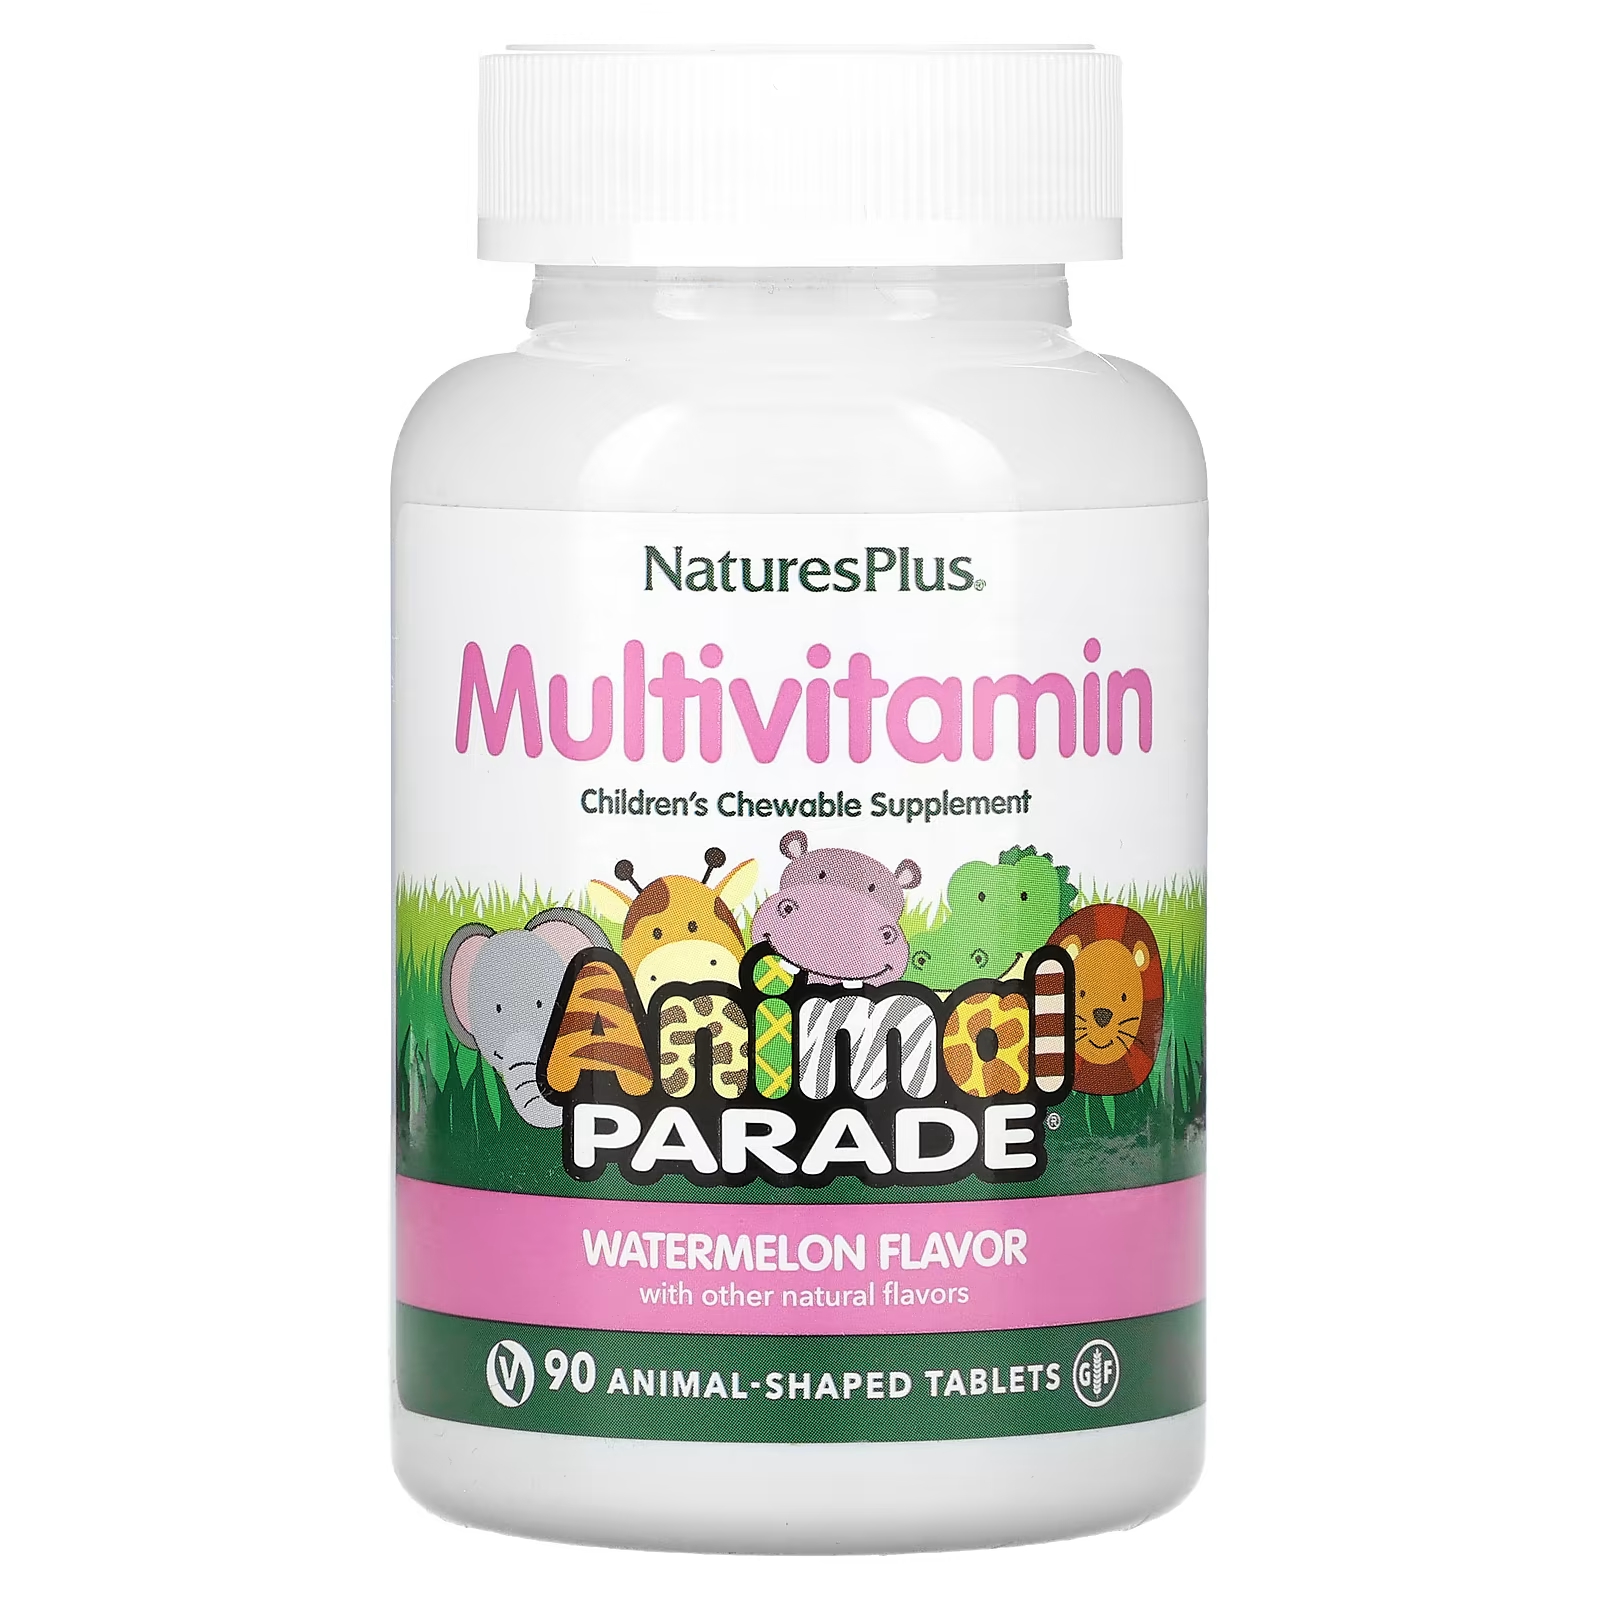 Мультивитамины NaturesPlus для детей со вкусом арбуза, 90 таблеток мультивитамины для пренатального применения naturesplus 180 таблеток